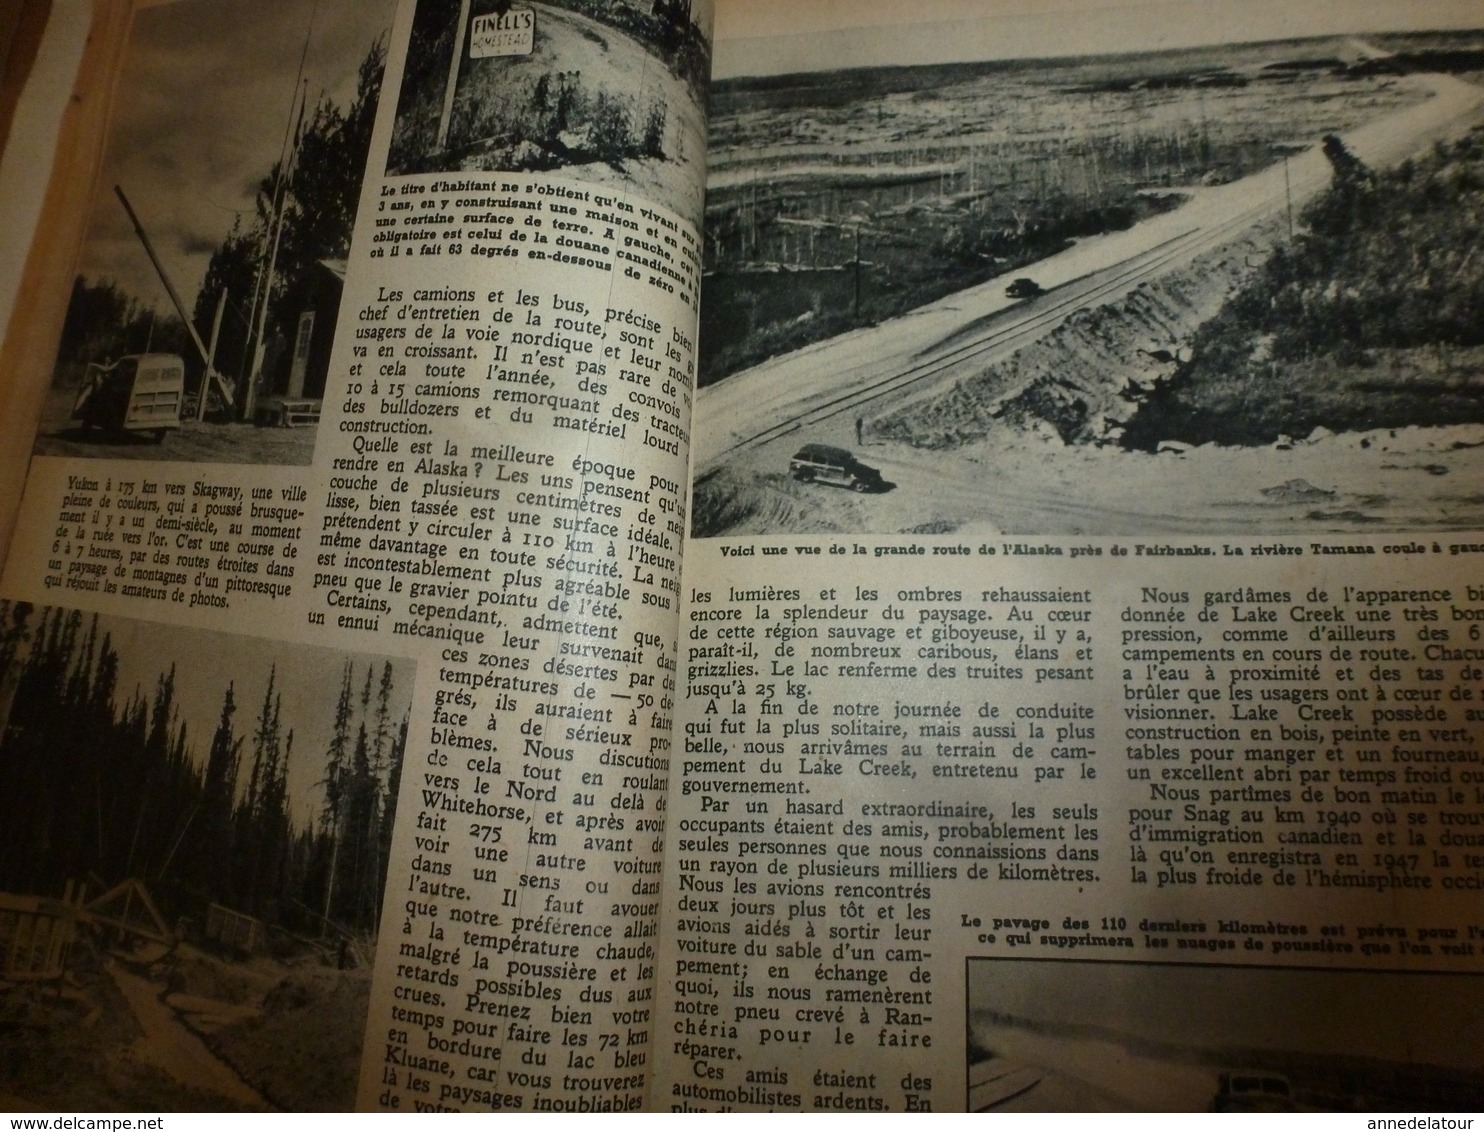 1949 MÉCANIQUE POPULAIRE:Publicité par Pipo;Les locomotives américaines;Faire lunette de tir;Diminuer conso essence;etc